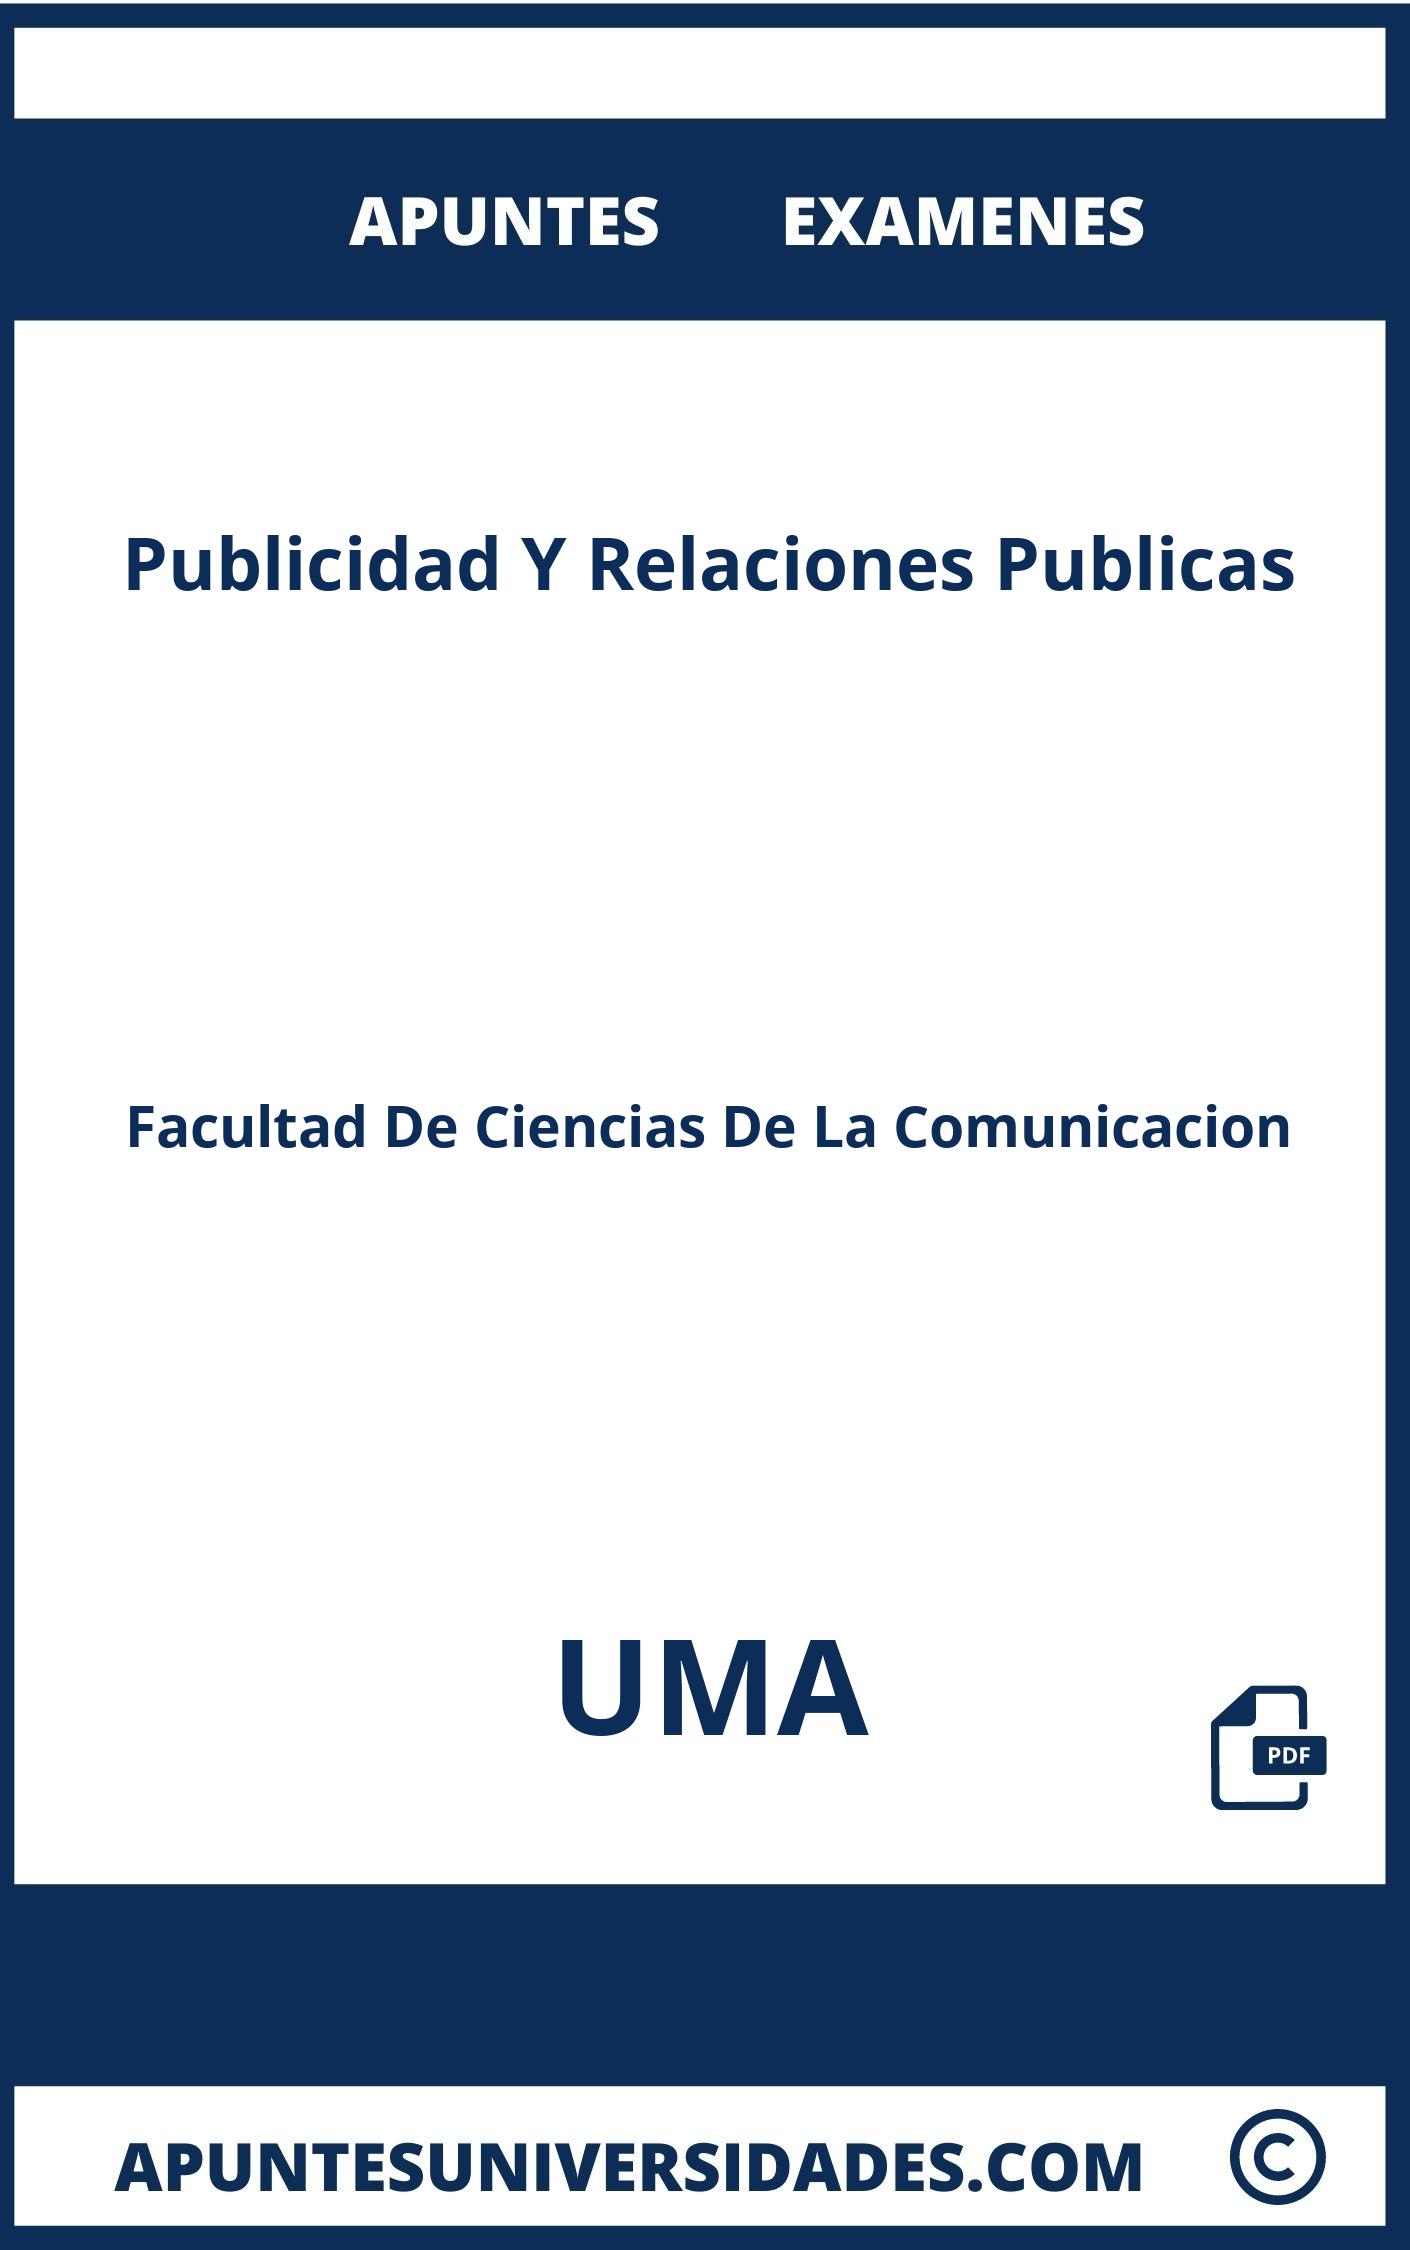 Publicidad Y Relaciones Publicas UMA Examenes Apuntes